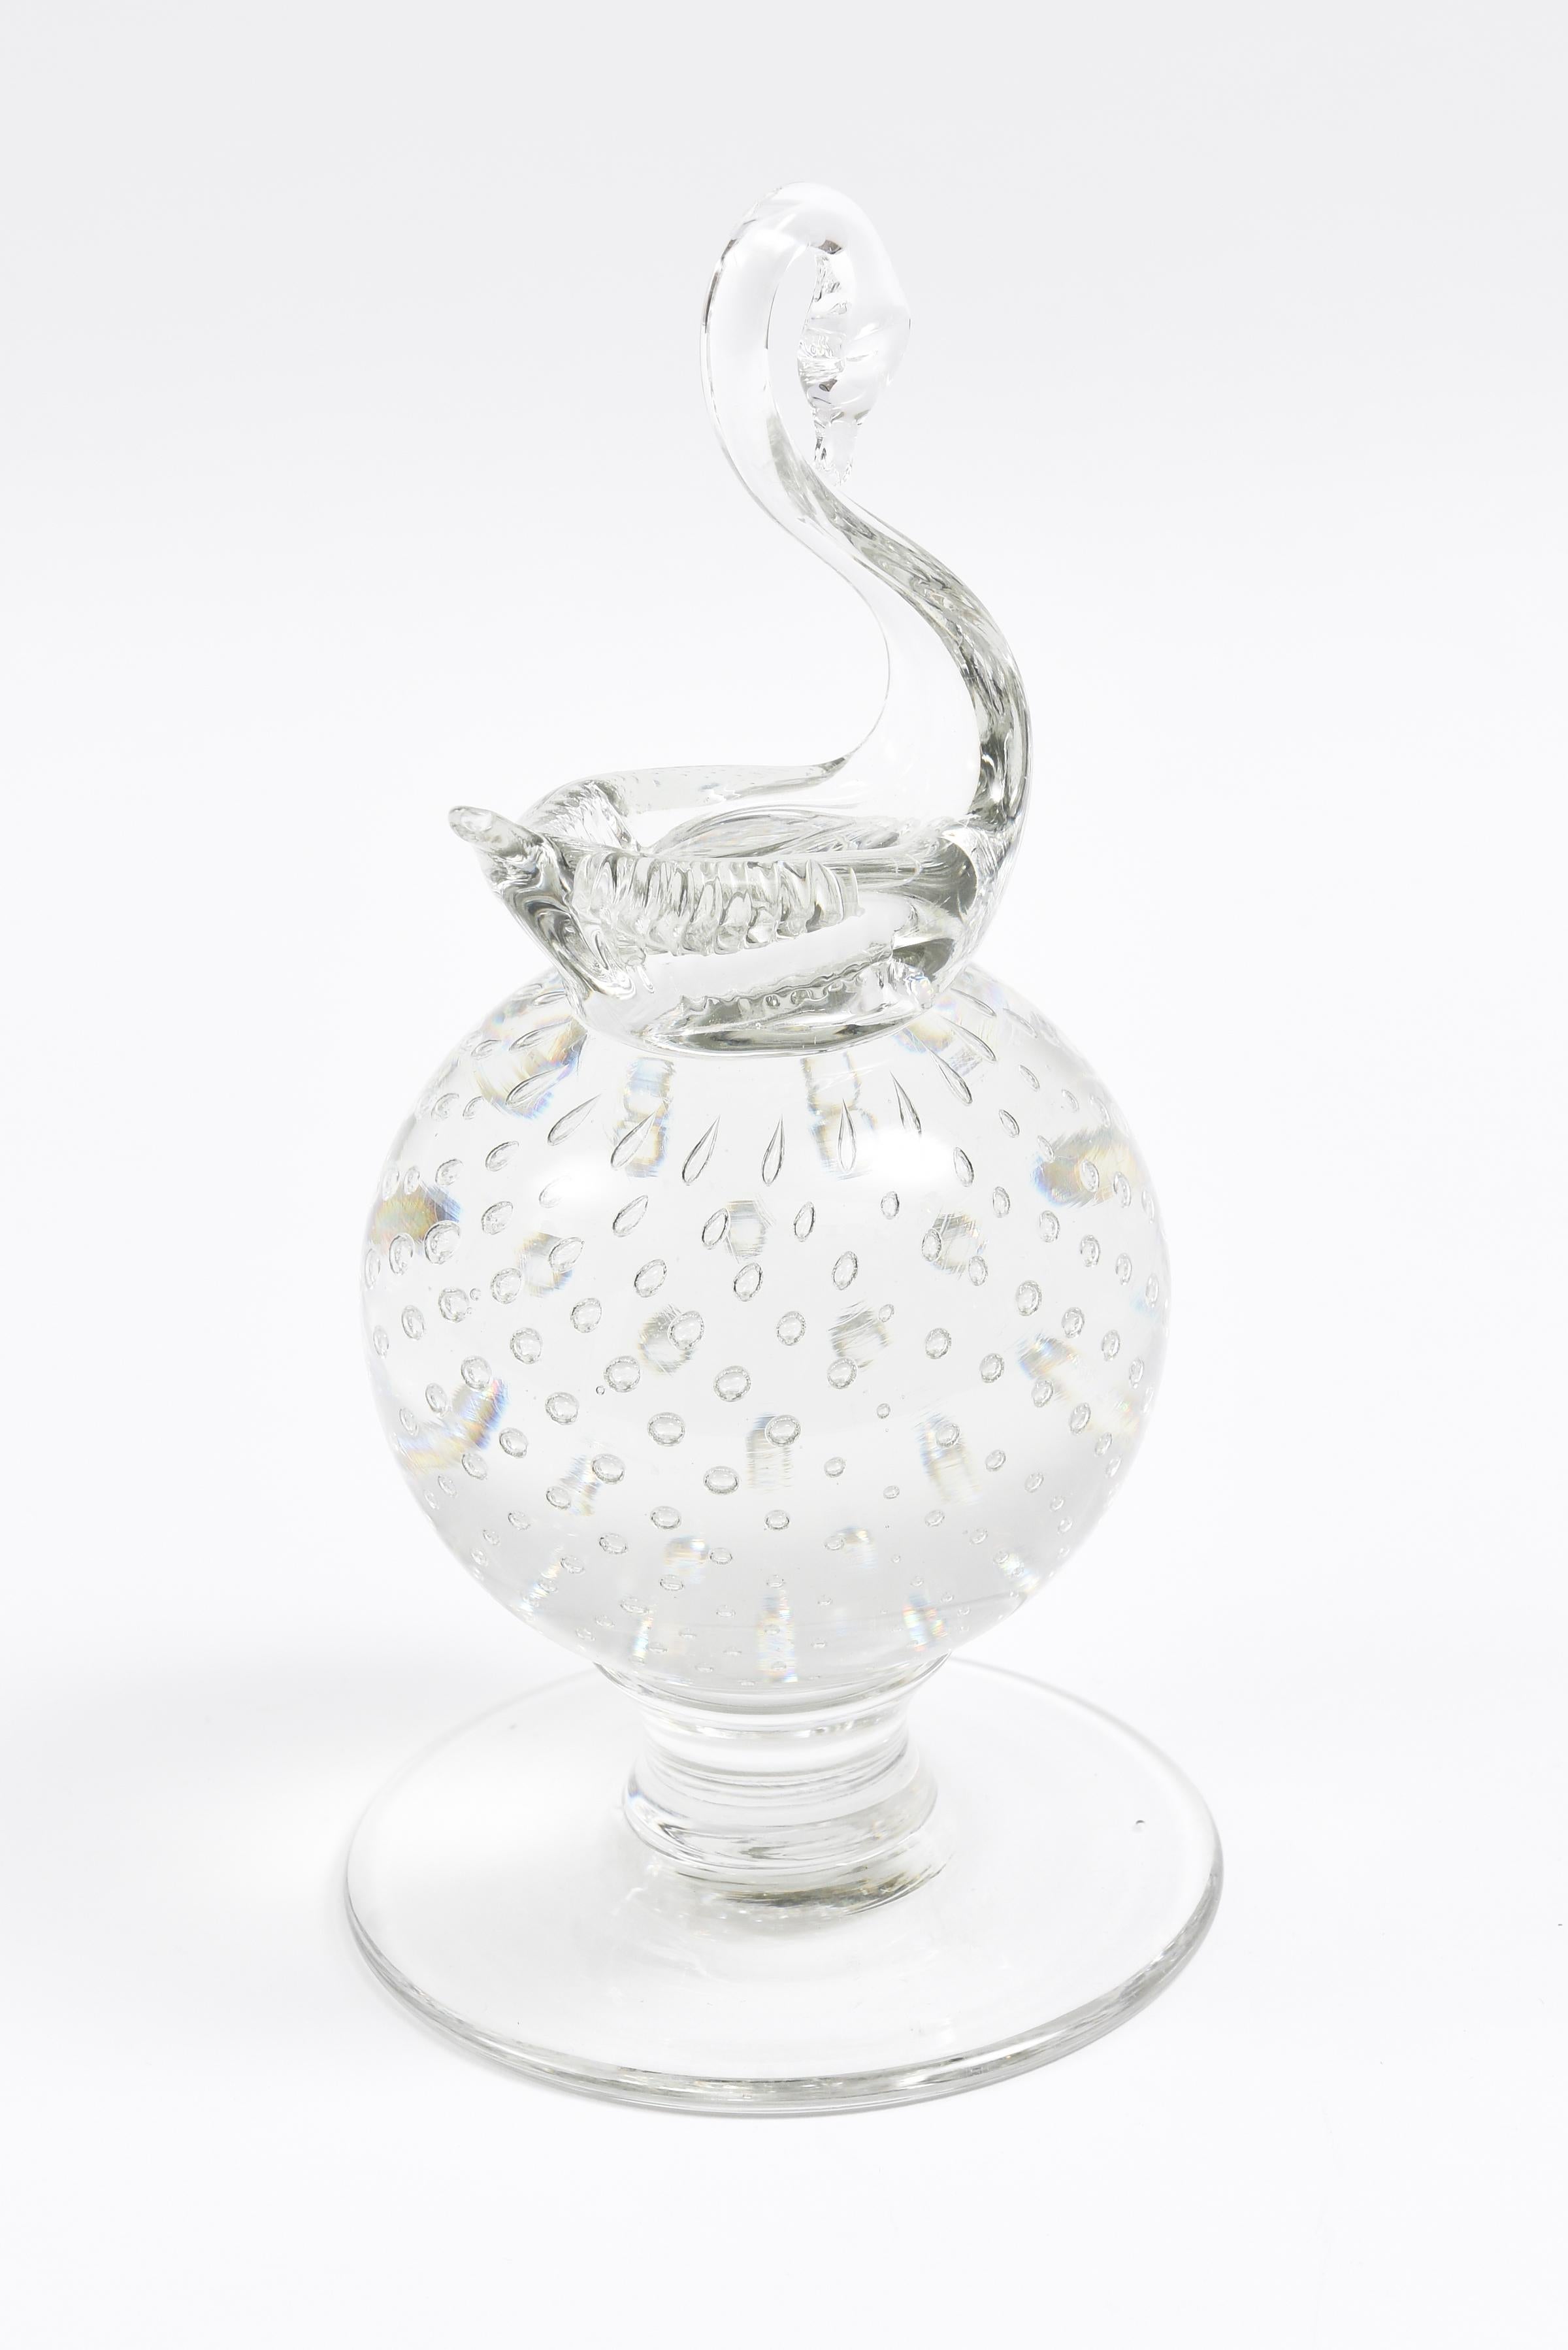 Dieses wunderschön geblasene Kunstwerk stammt von Amerikas ältestem noch aktiven Kristallhersteller. Es zeigt einen eleganten Schwan und die charakteristische, kontrollierte Blase von Pairpoint. In sehr gutem Vintage-Zustand.